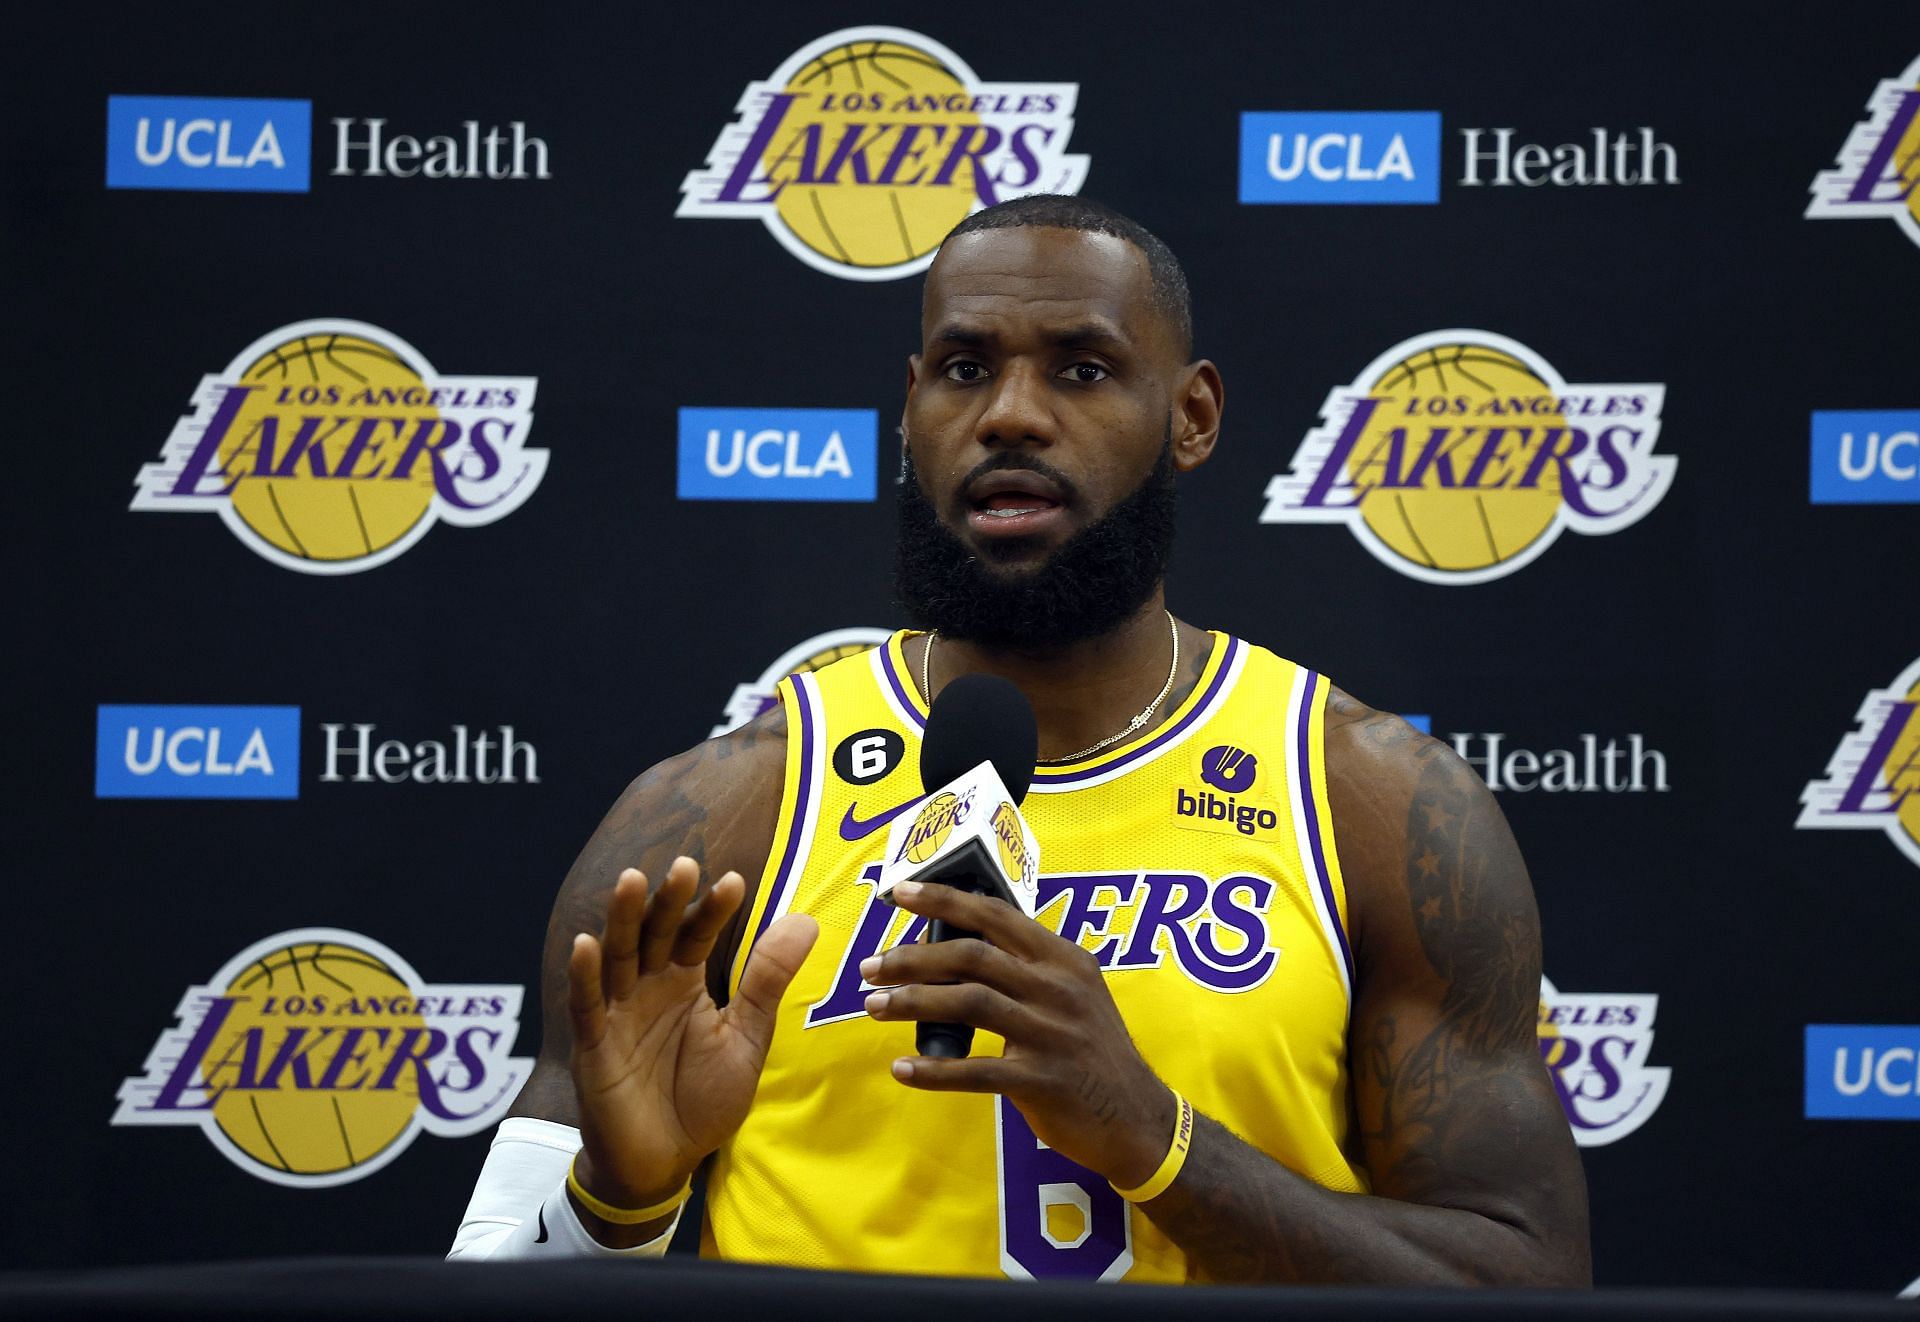 Los Angeles Lakers forward LeBron James at Media Day